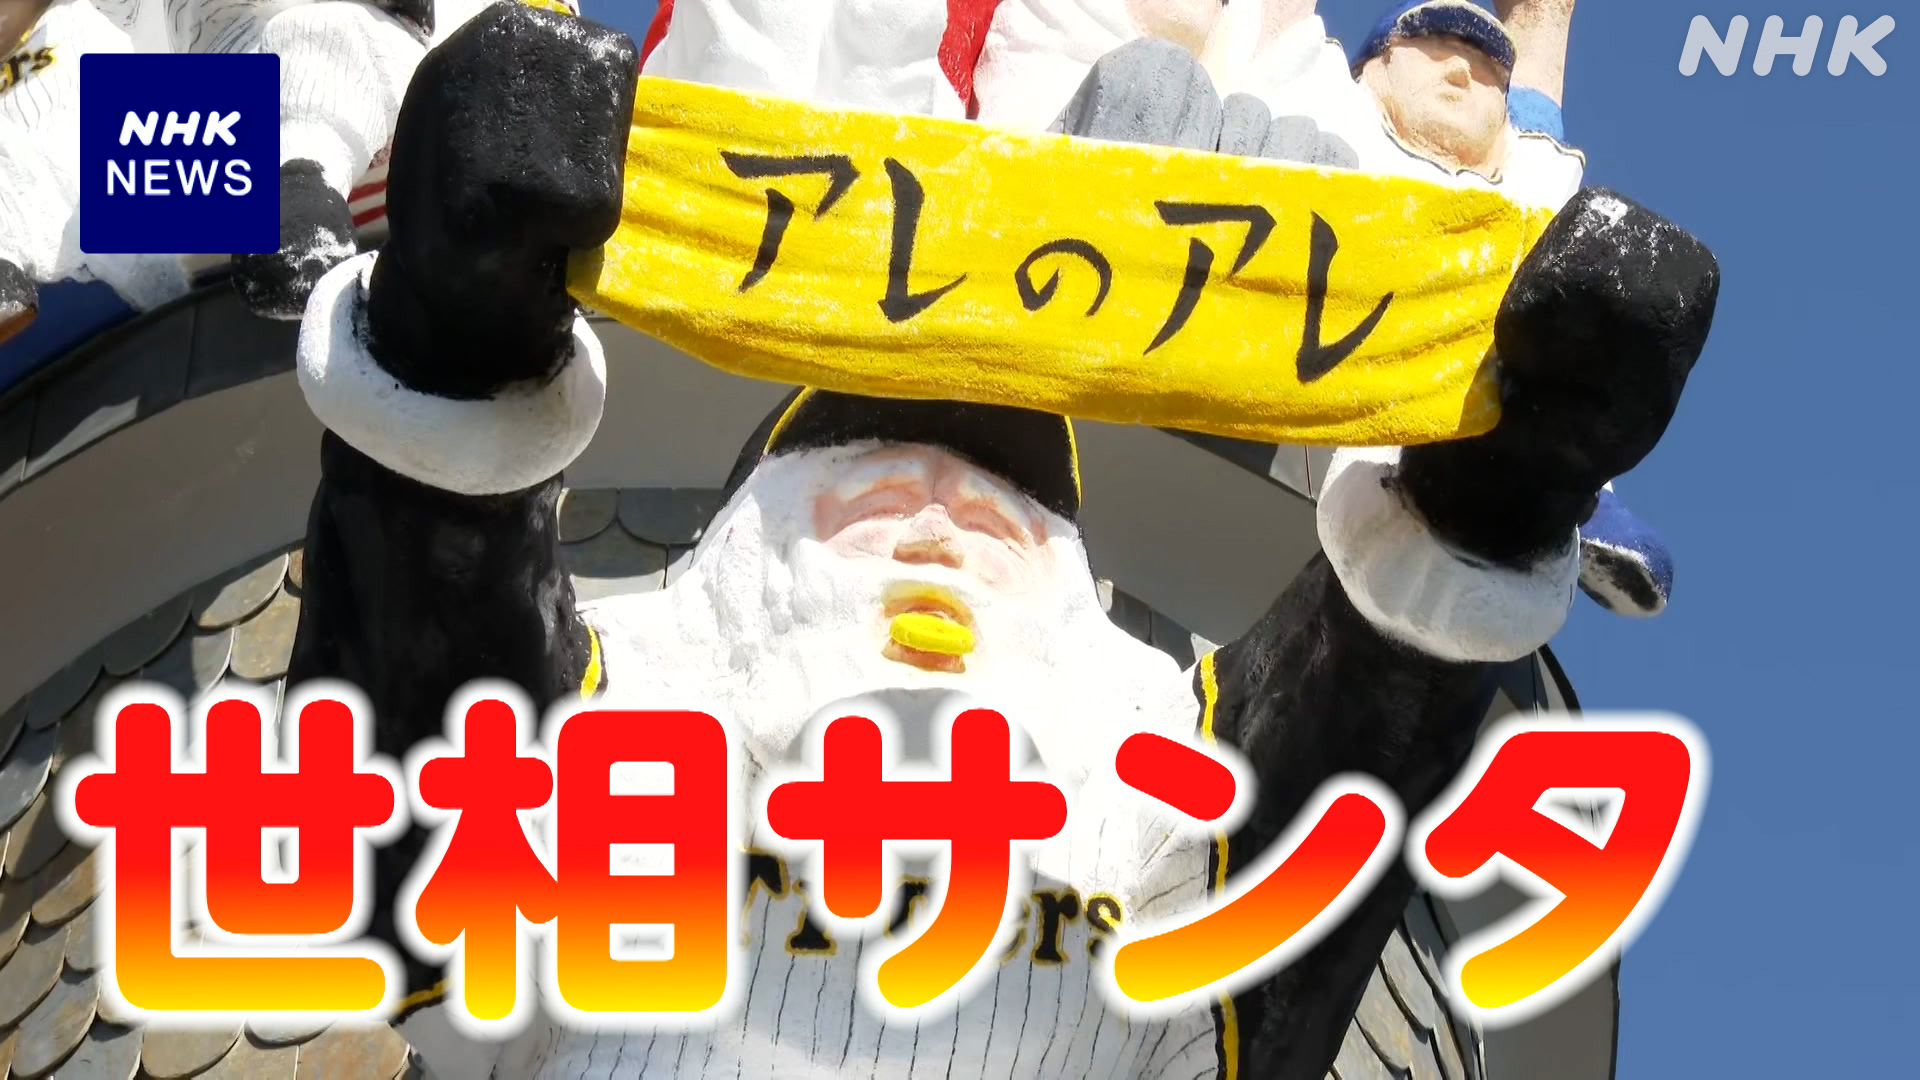 This year’s “Social Santa” wears Japan’s best Hanshin uniform Kobe | NHK